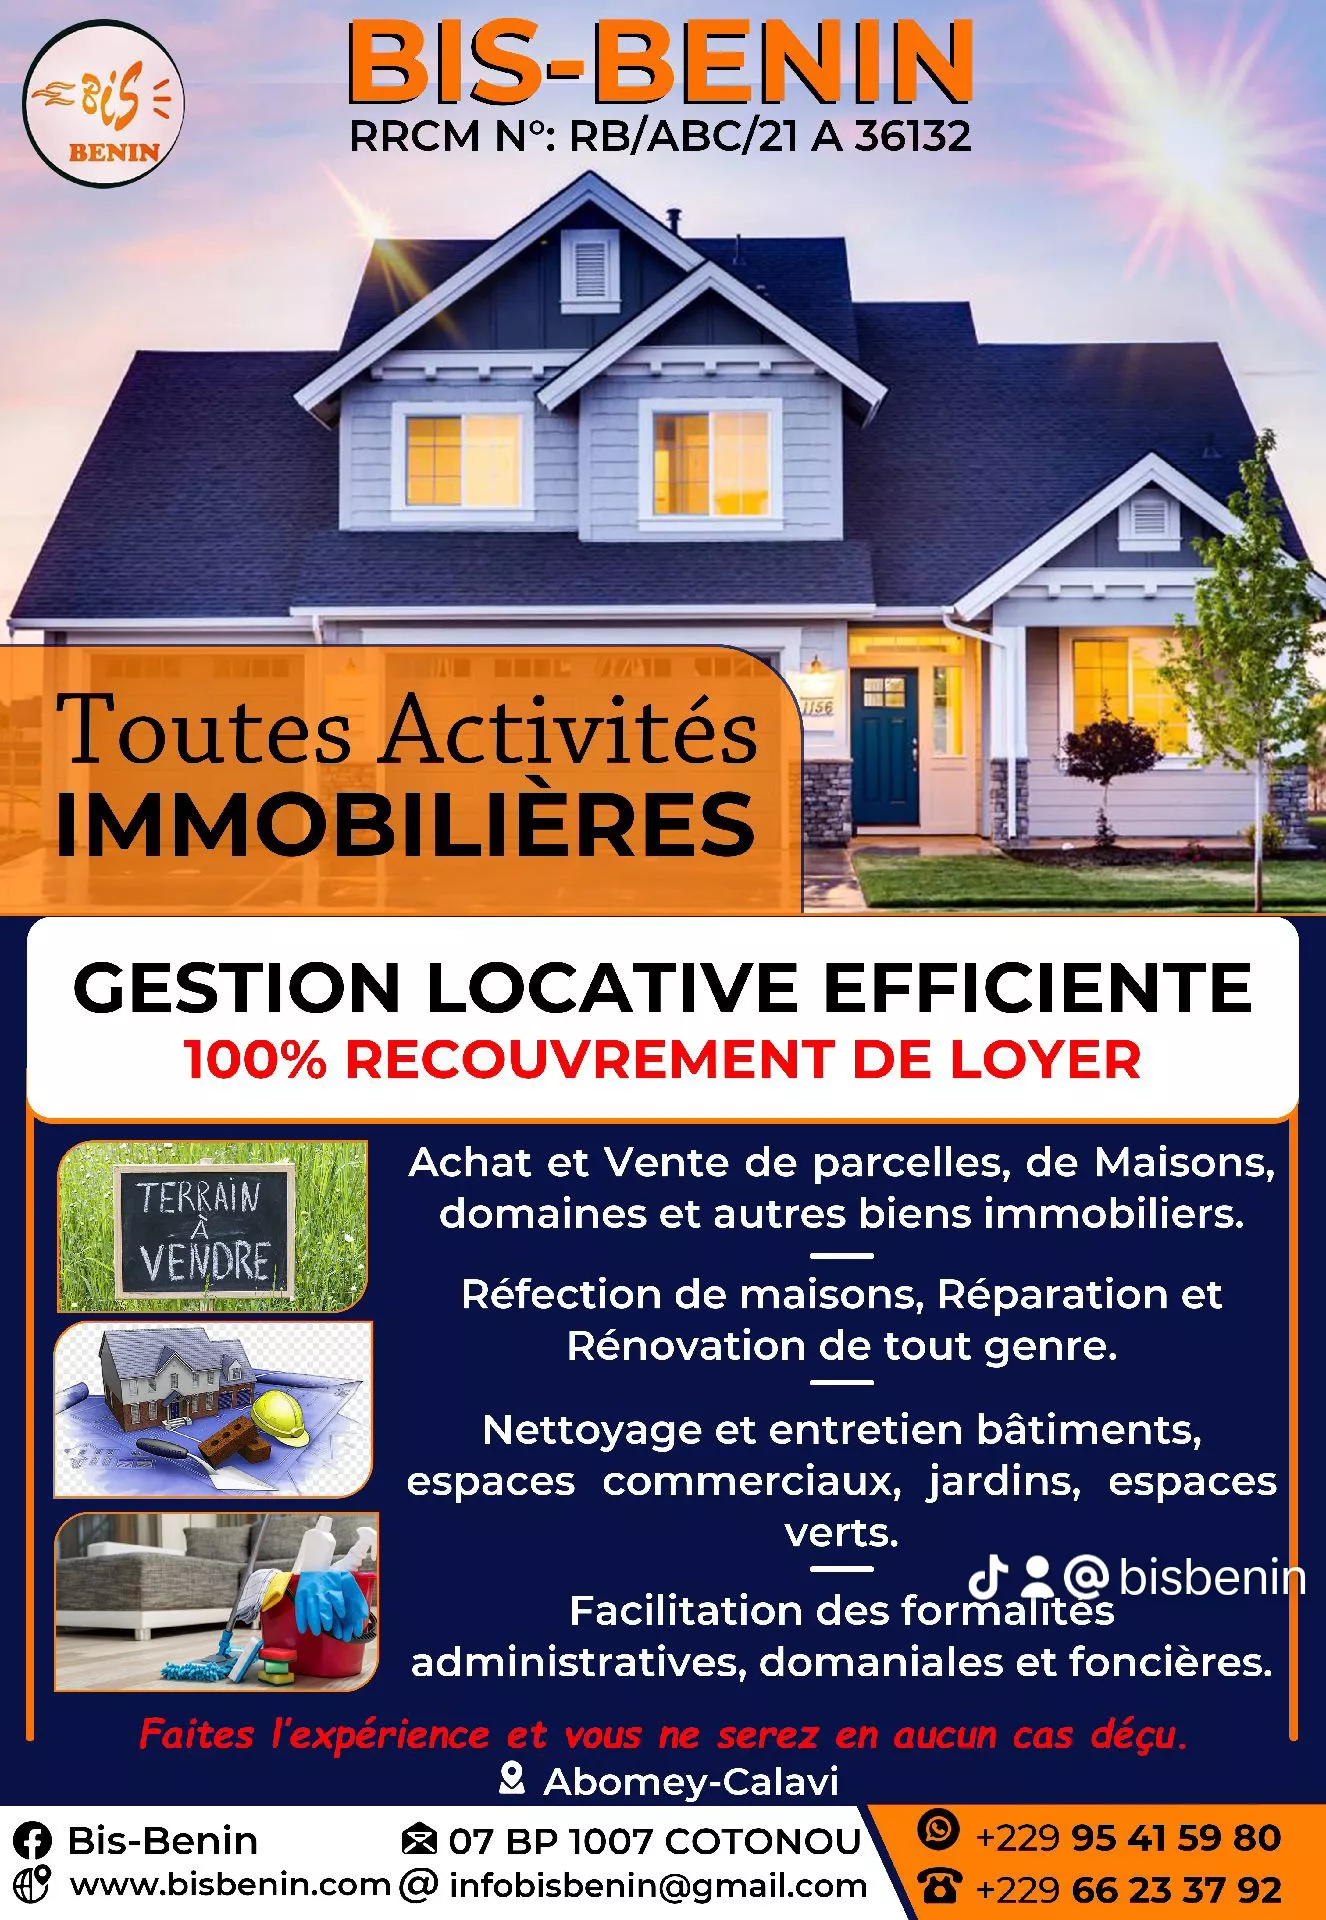 Gestion locative efficiente & 100% RECOUVREMEN à 5 - Petites annonces gratuites - Achat et vente à Abomey-Calavi, Bénin